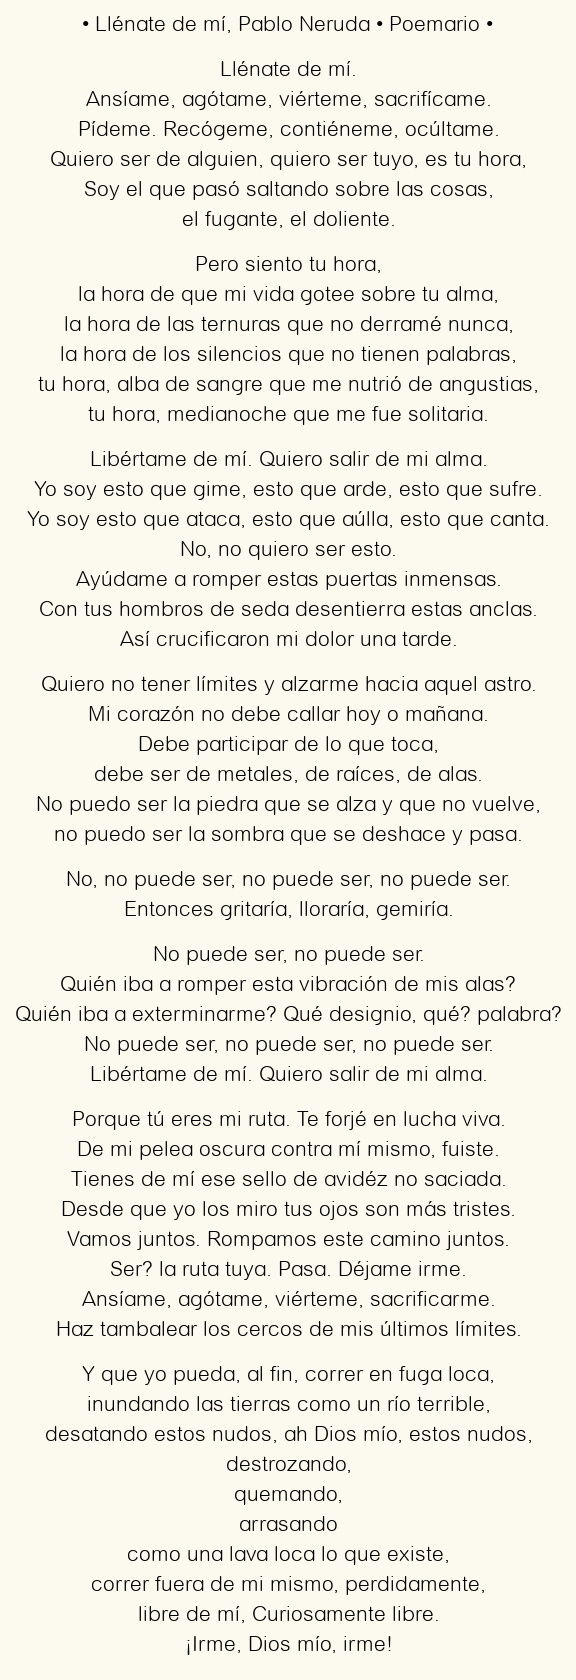 Imagen con el poema Llénate de mí, por Pablo Neruda